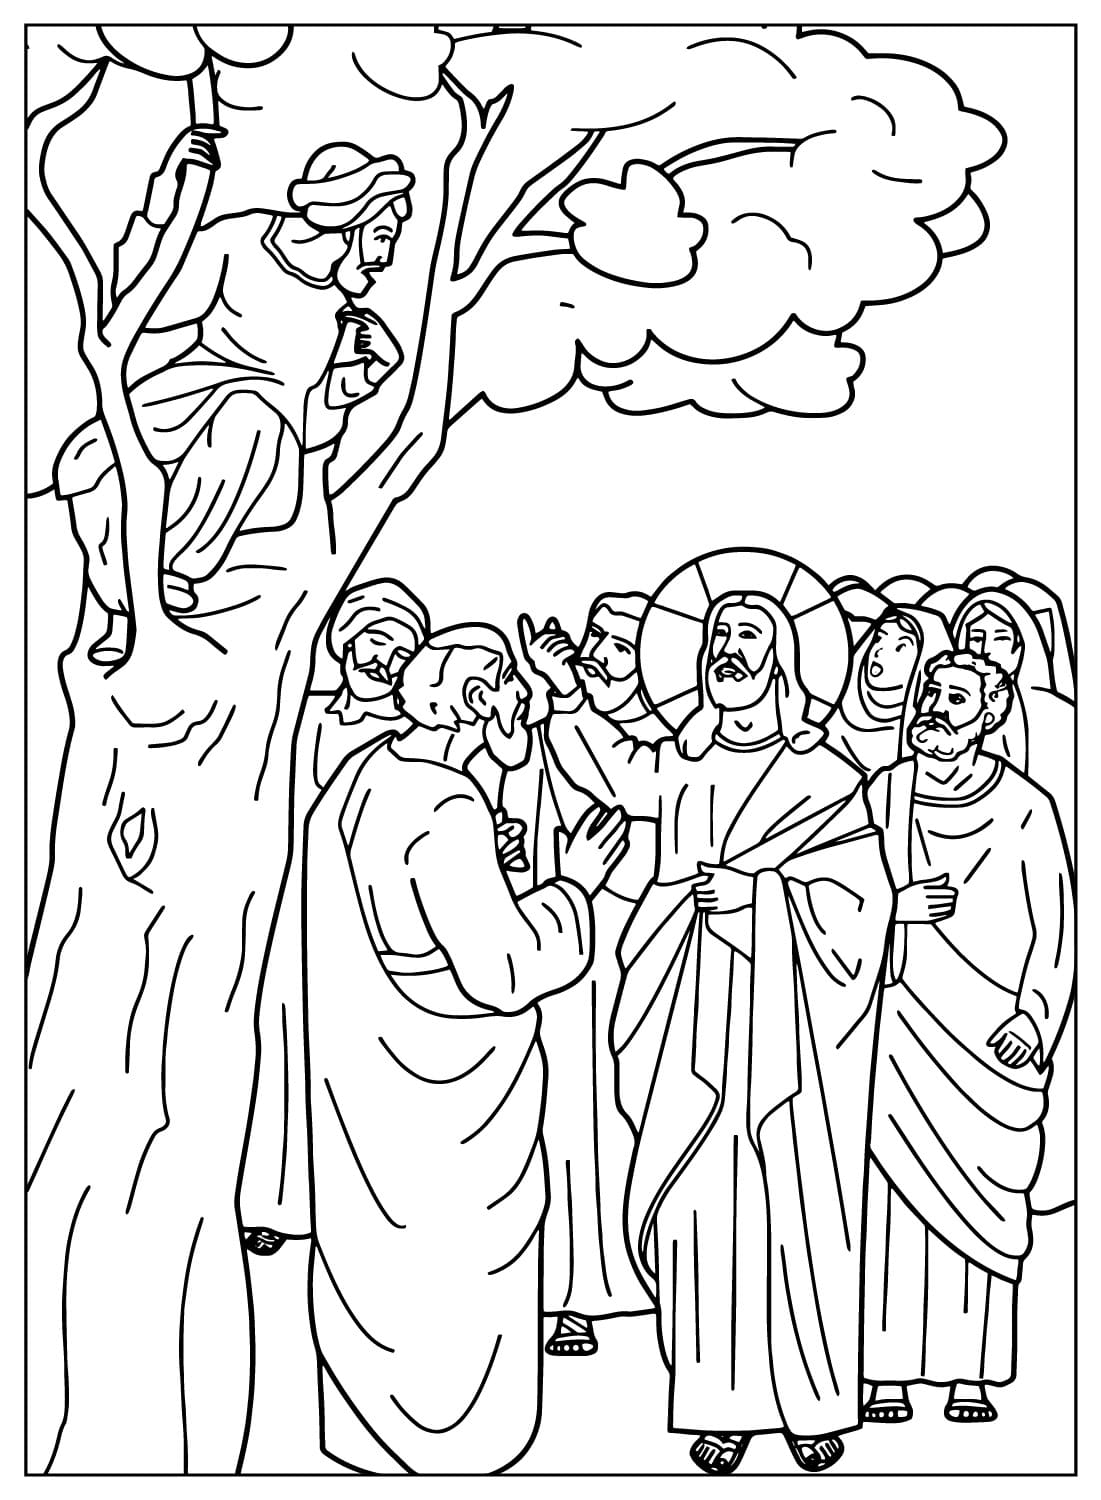 Zachäus sitzt auf einem Baum, während Jesus von Jesus zu ihm spricht